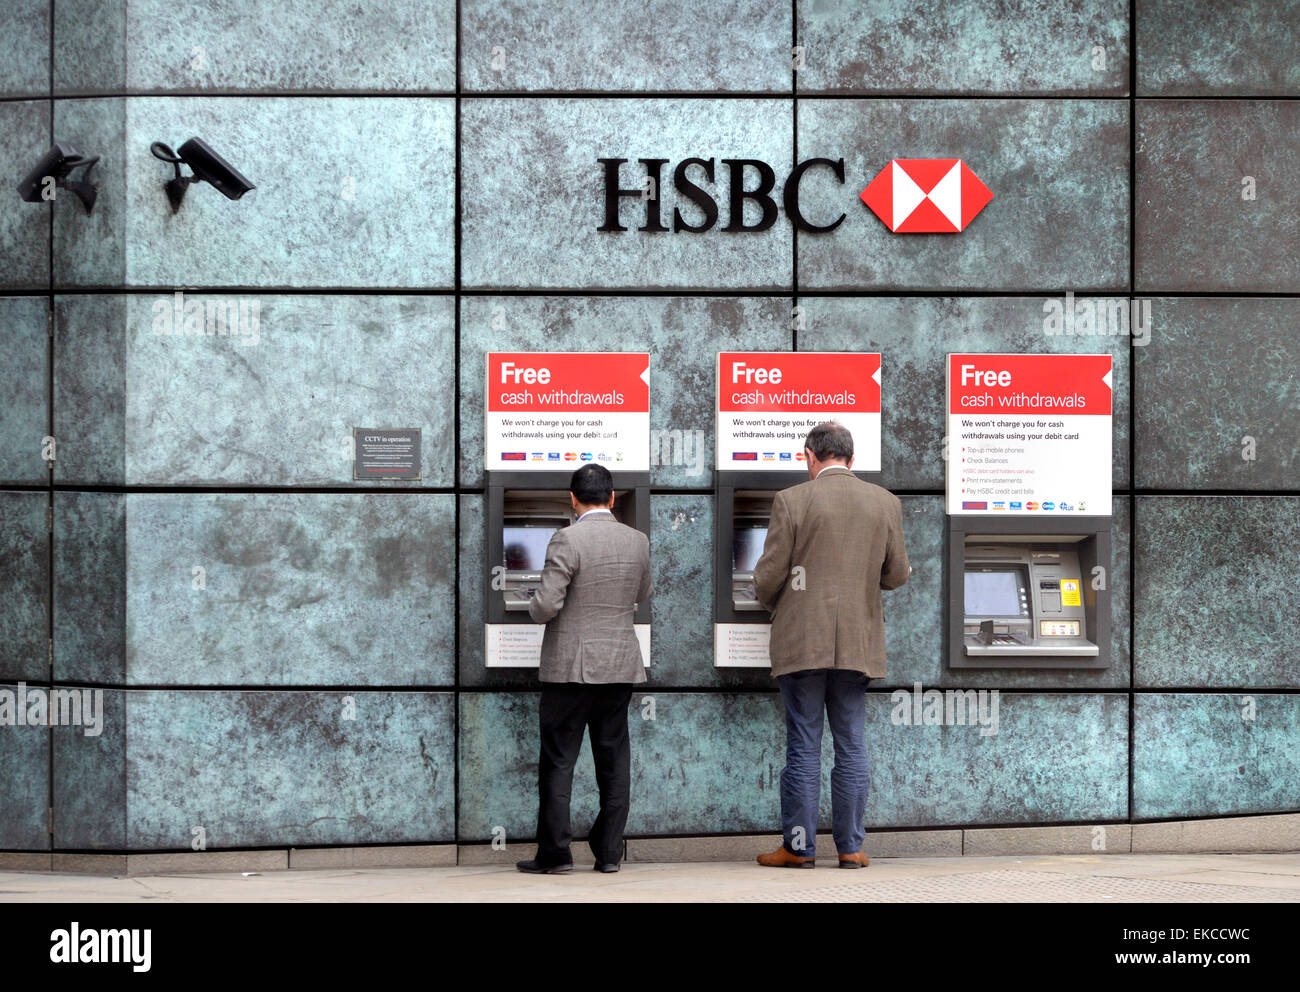 Londra, Inghilterra, Regno Unito. HSBC ATM / bancomat in città Foto Stock